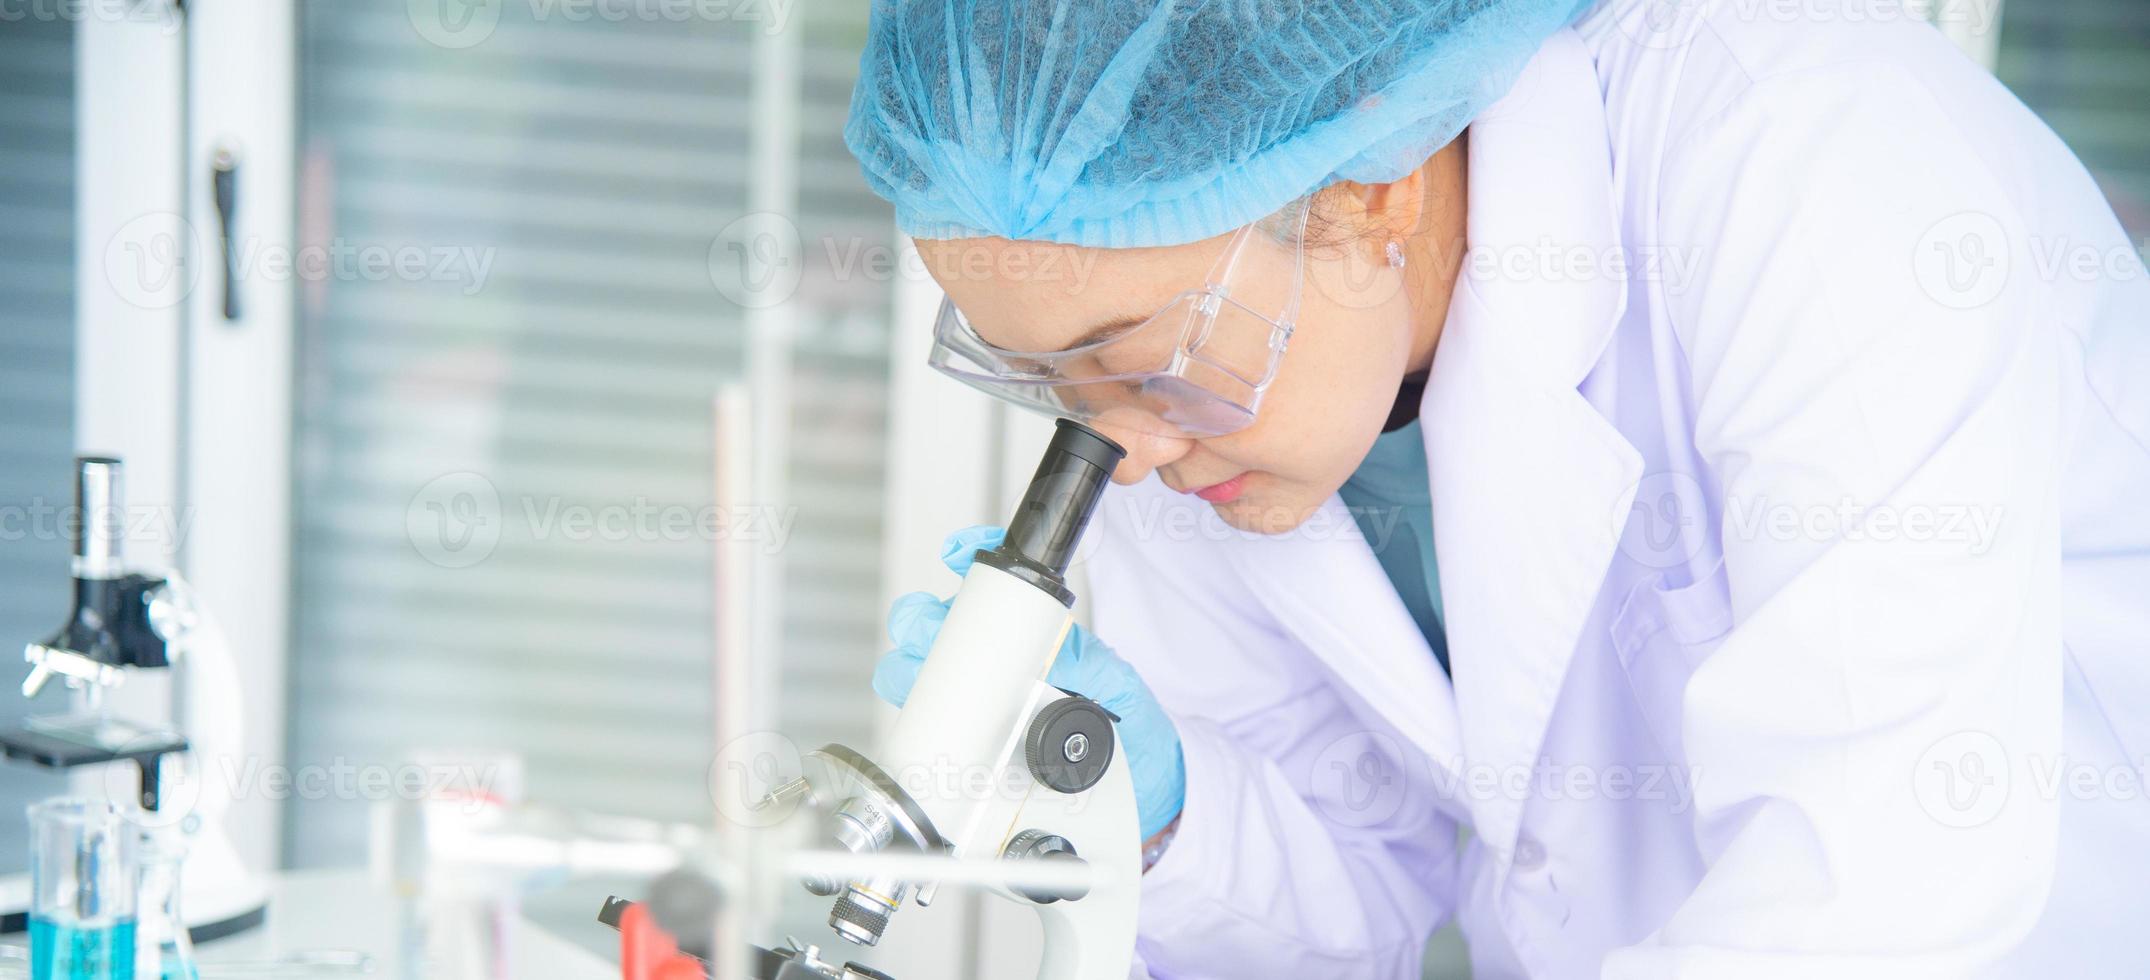 asiatisk kvinnlig forskare, forskare, tekniker eller student genomförde forskning eller experiment med hjälp av mikroskop som är vetenskaplig utrustning i medicinska, kemi- eller biologiska laboratorium foto